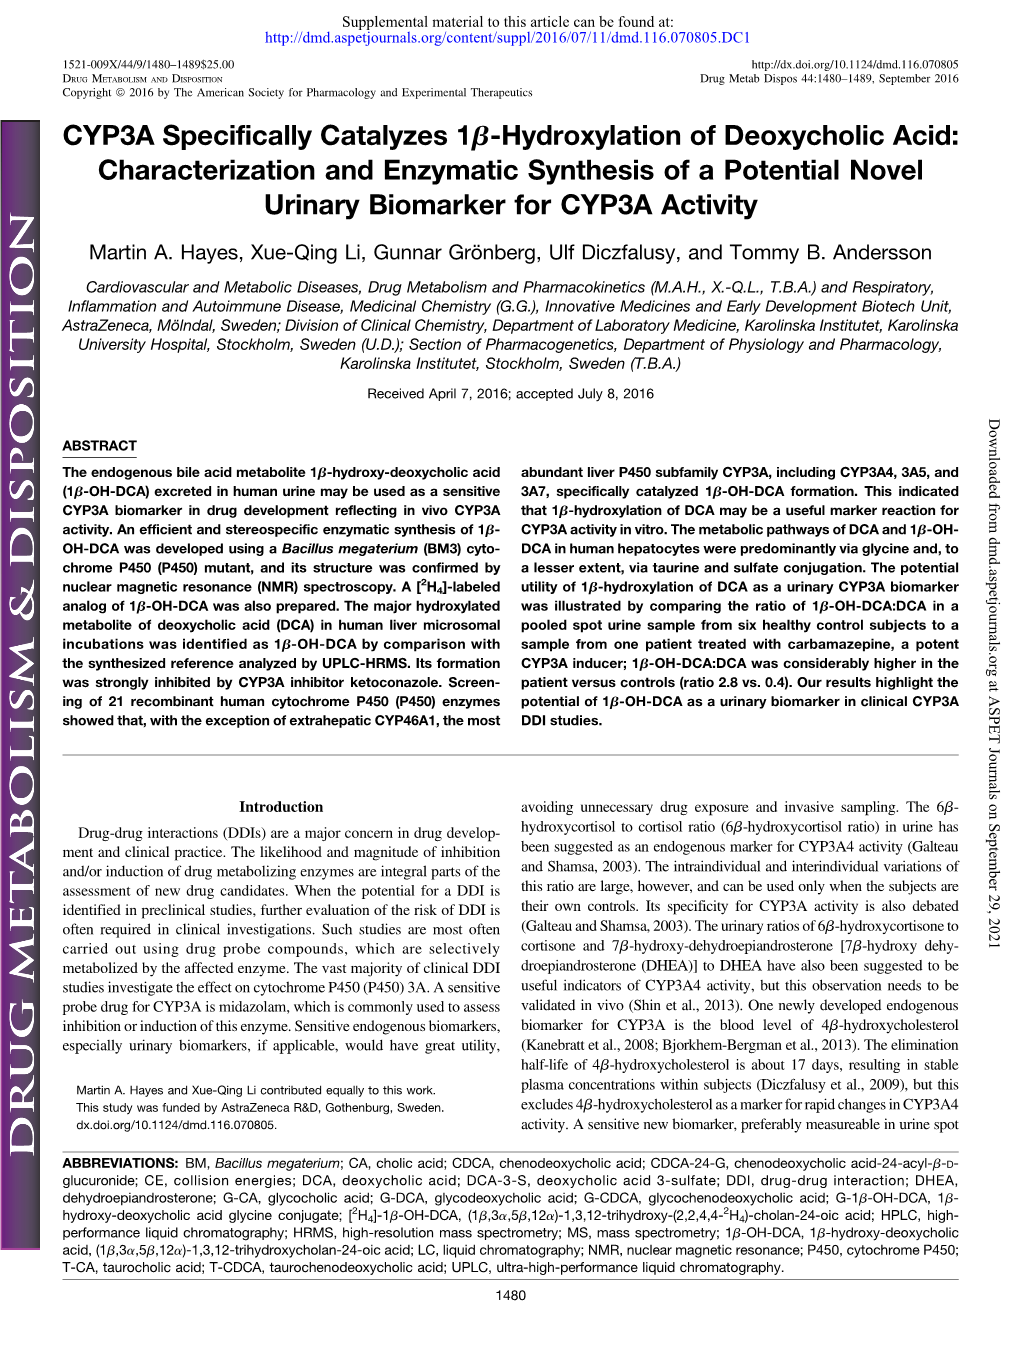 CYP3A Specifically Catalyzes 1Β-Hydroxylation of Deoxycholic Acid